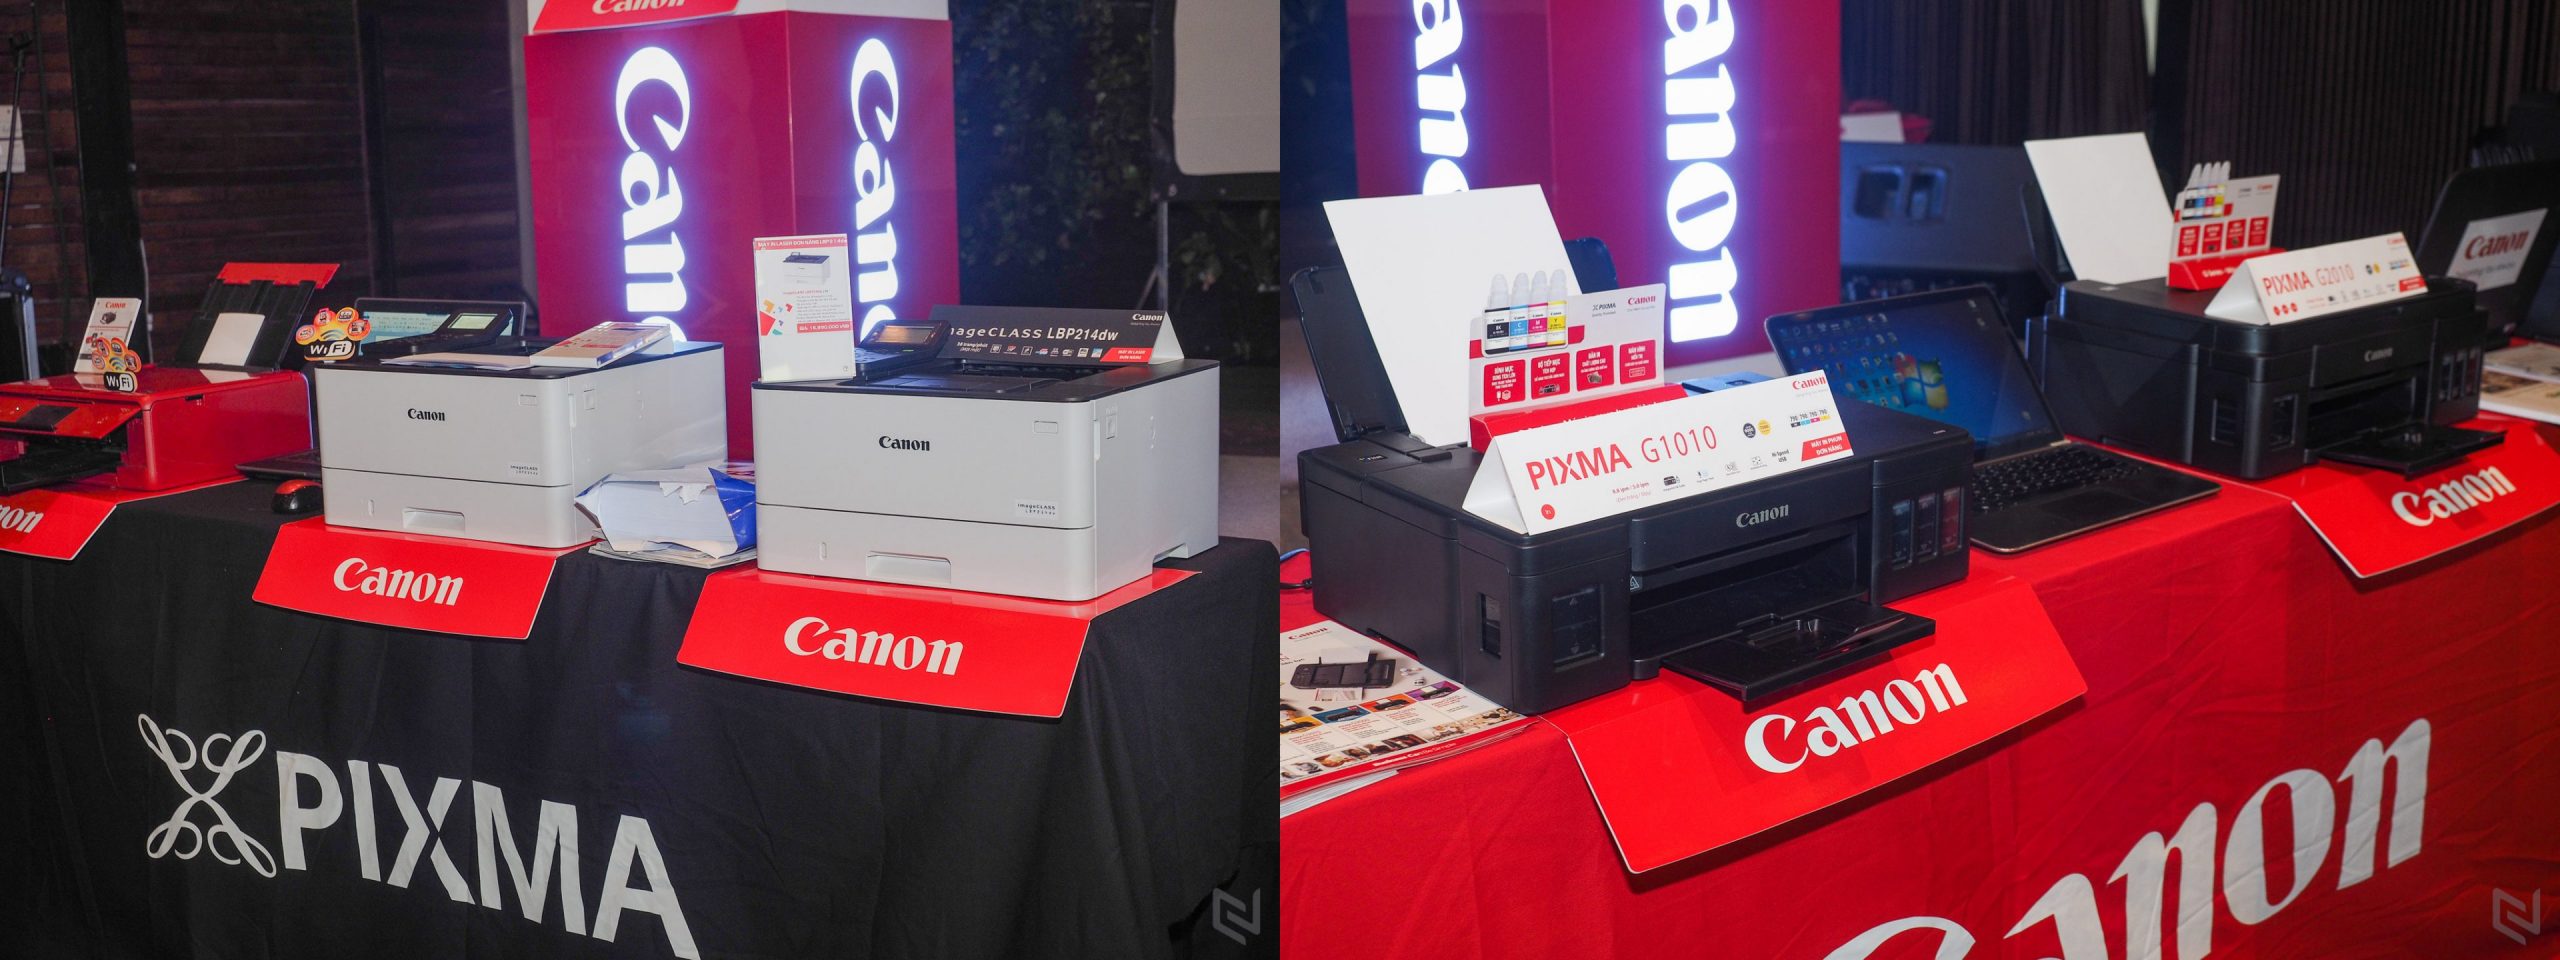 Canon giới thiệu 4 mẫu máy in phun dòng G Series và 2 mẫu in Laser thế hệ mới